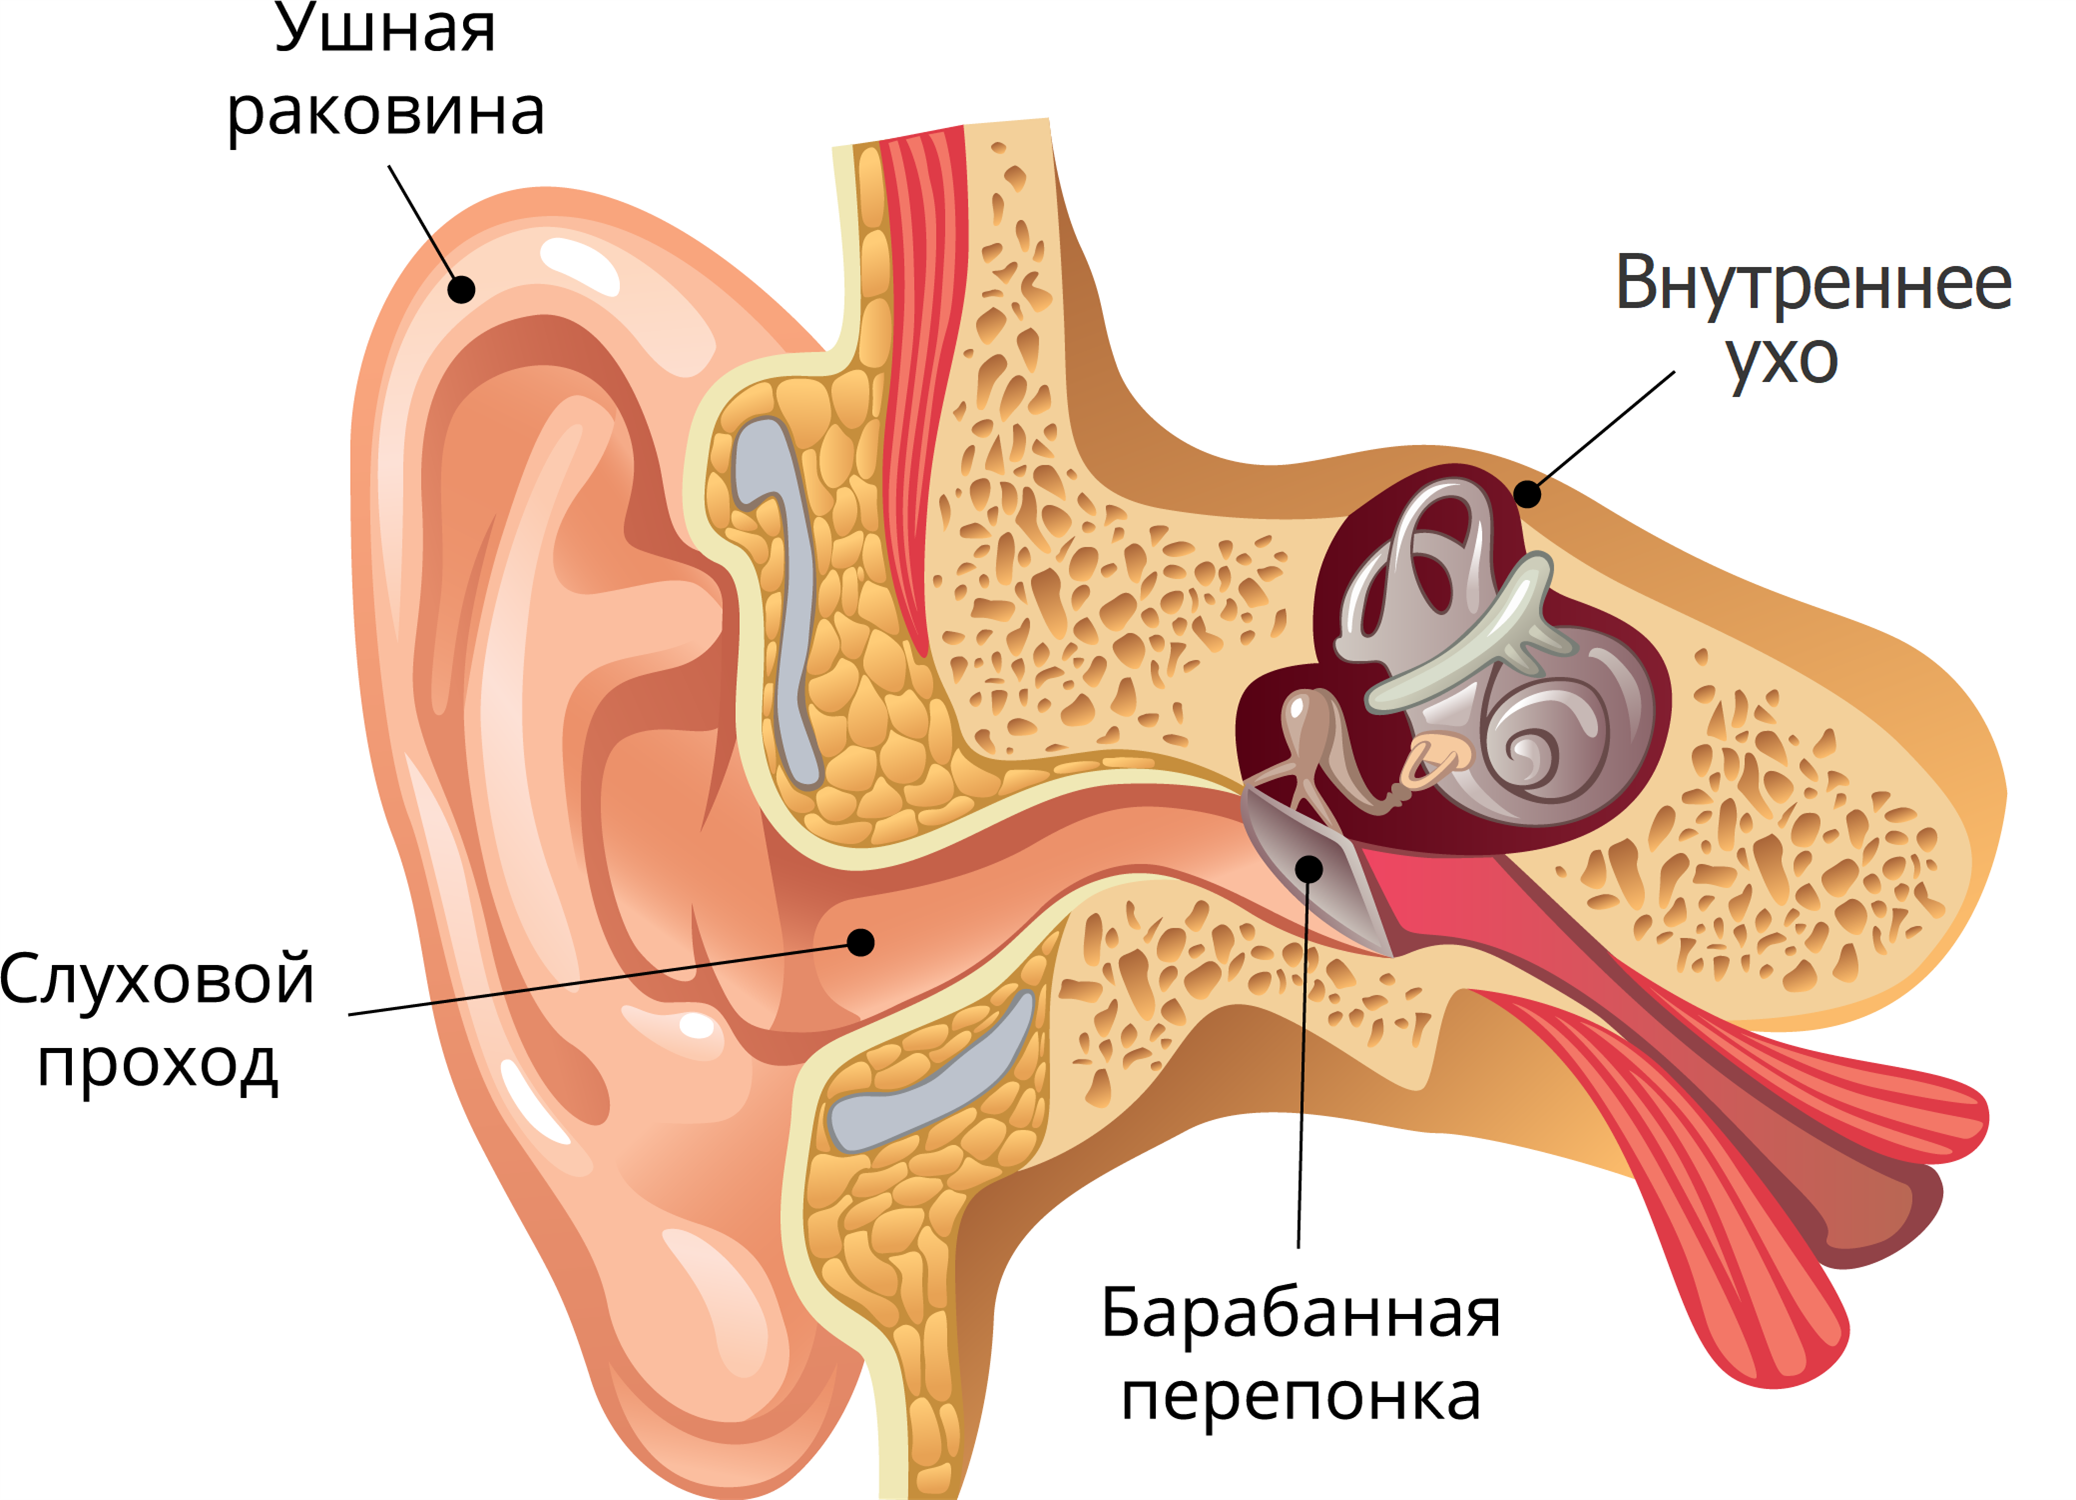 Улитка входит в состав уха